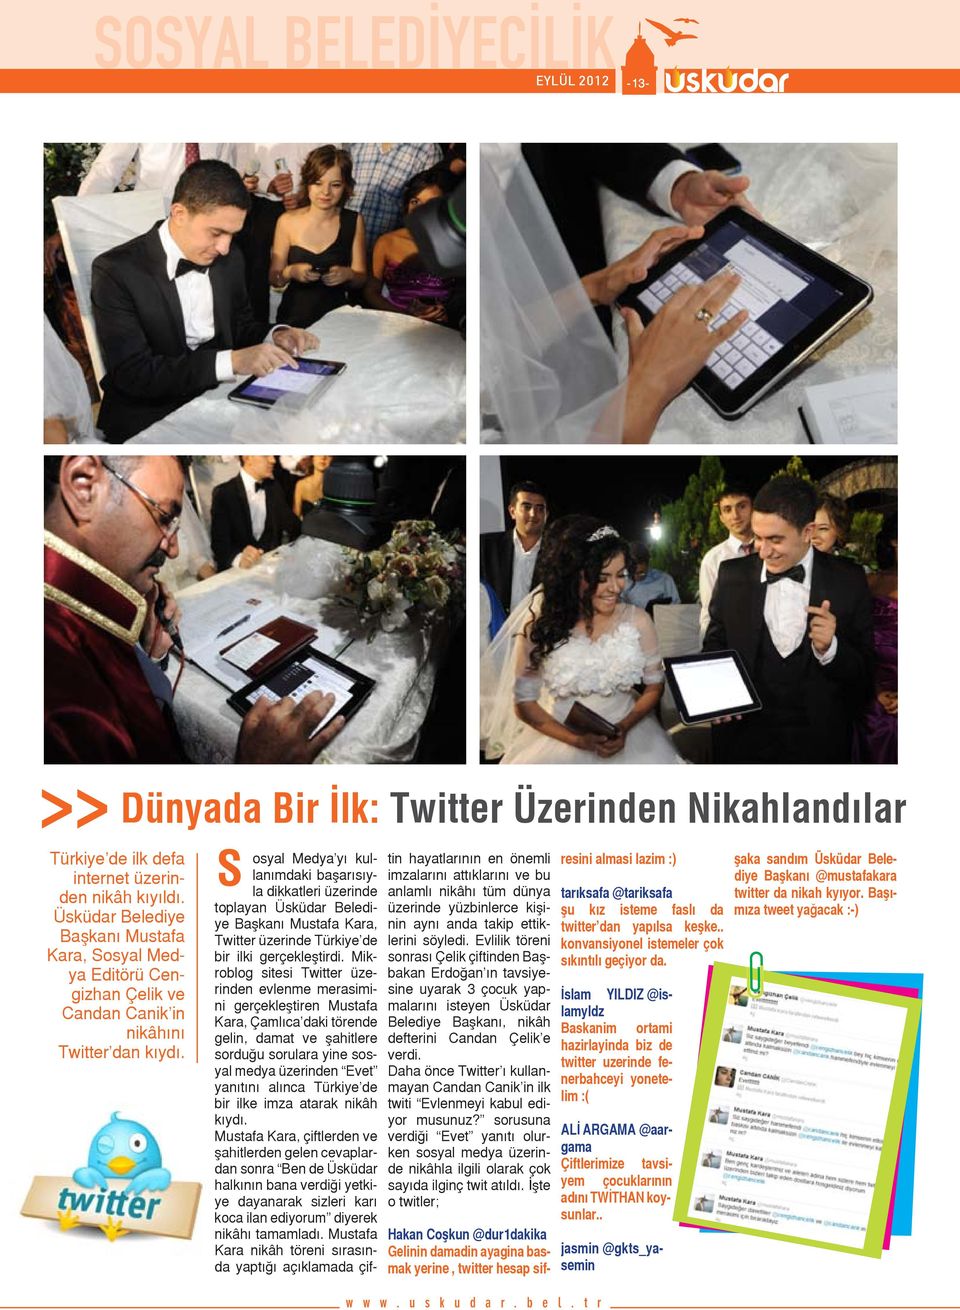 Dünyada Bir İlk: Twitter Üzerinden Nikahlandılar S osyal Medya yı kullanımdaki başarısıyla dikkatleri üzerinde toplayan Üsküdar Belediye Başkanı Mustafa Kara, Twitter üzerinde Türkiye de bir ilki